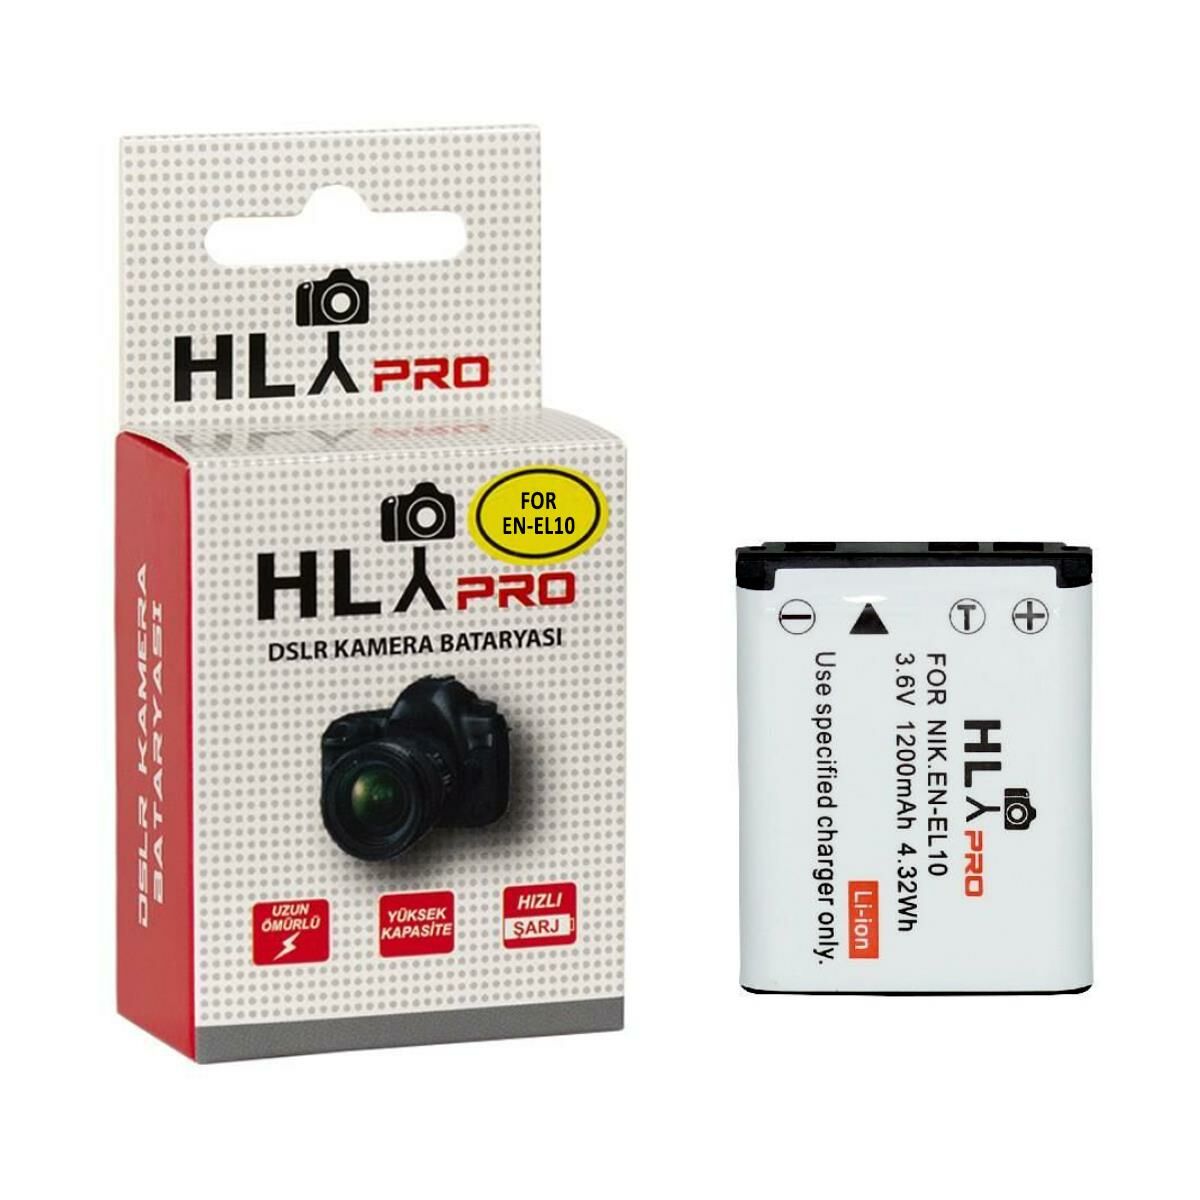 Hlypro Nikon Coolpix S510 için EN-EL10 Batarya